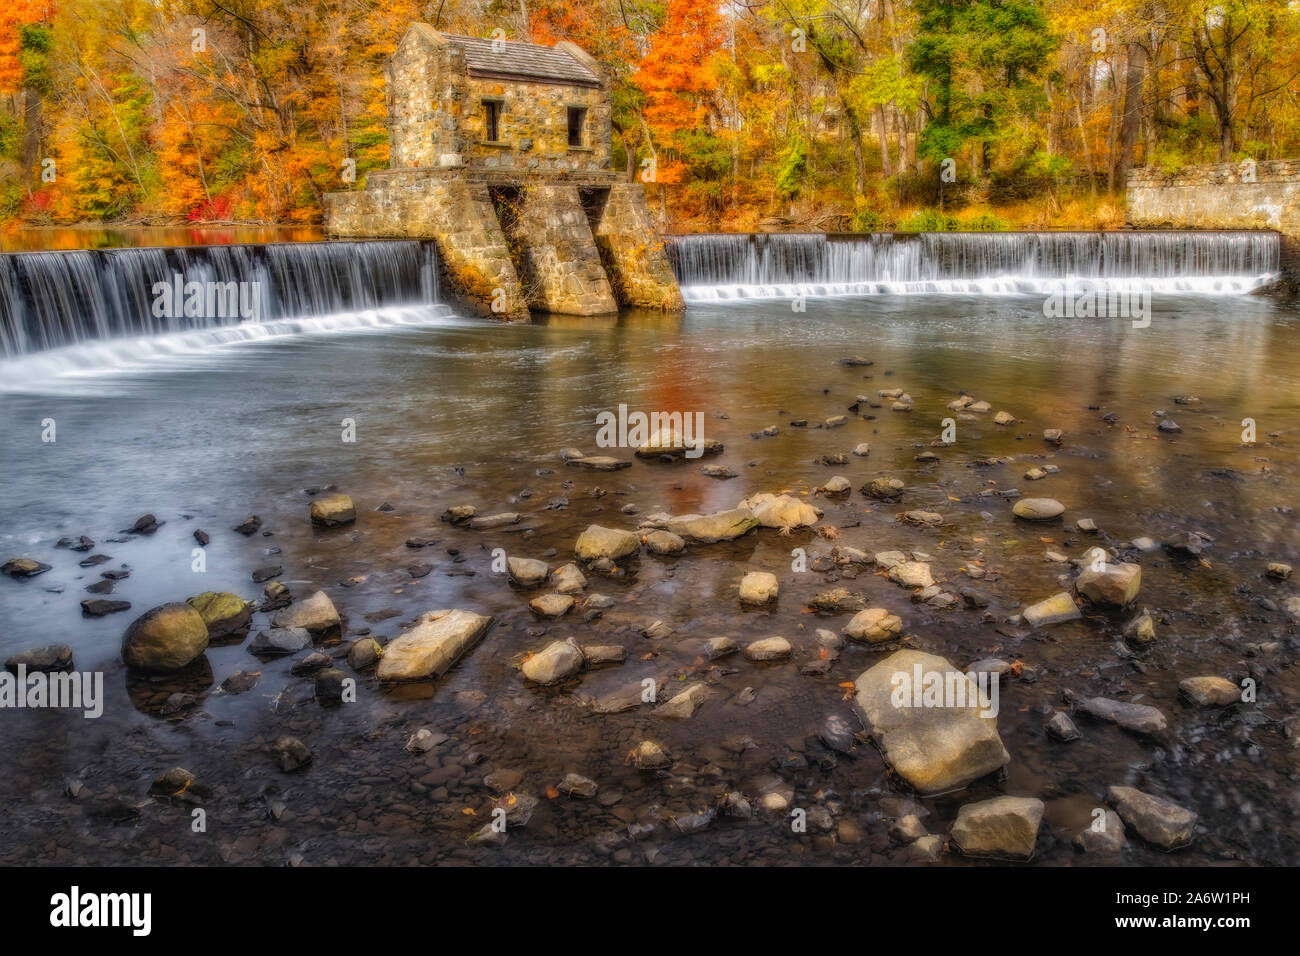 Speedwell Dam und Wasserfall - Blick auf den Stein Struktur auf der Whippany River durch die warmen Farben der Herbst Laub umgeben. Stockfoto